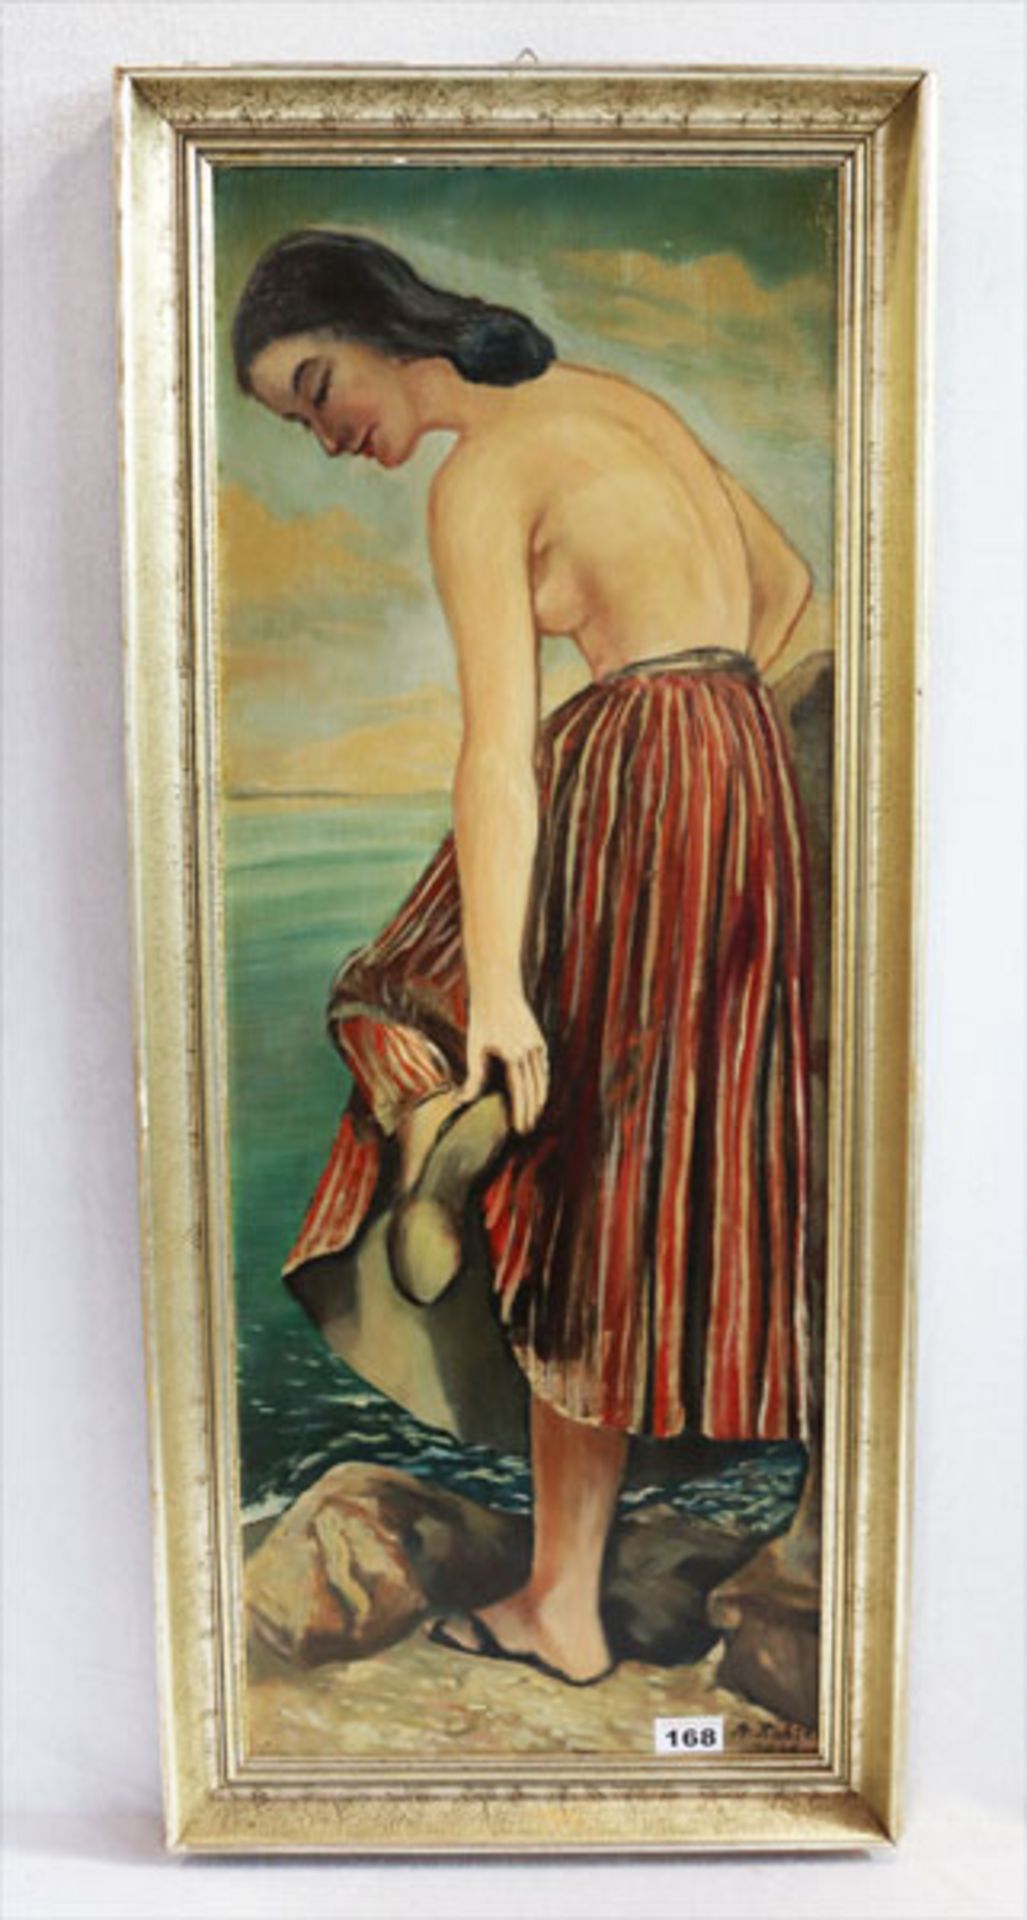 Gemälde ÖL/Holz 'Frau am Strand', signiert A. Richter, 1948 ?, gerahmt, Rahmen beschädigt, incl.